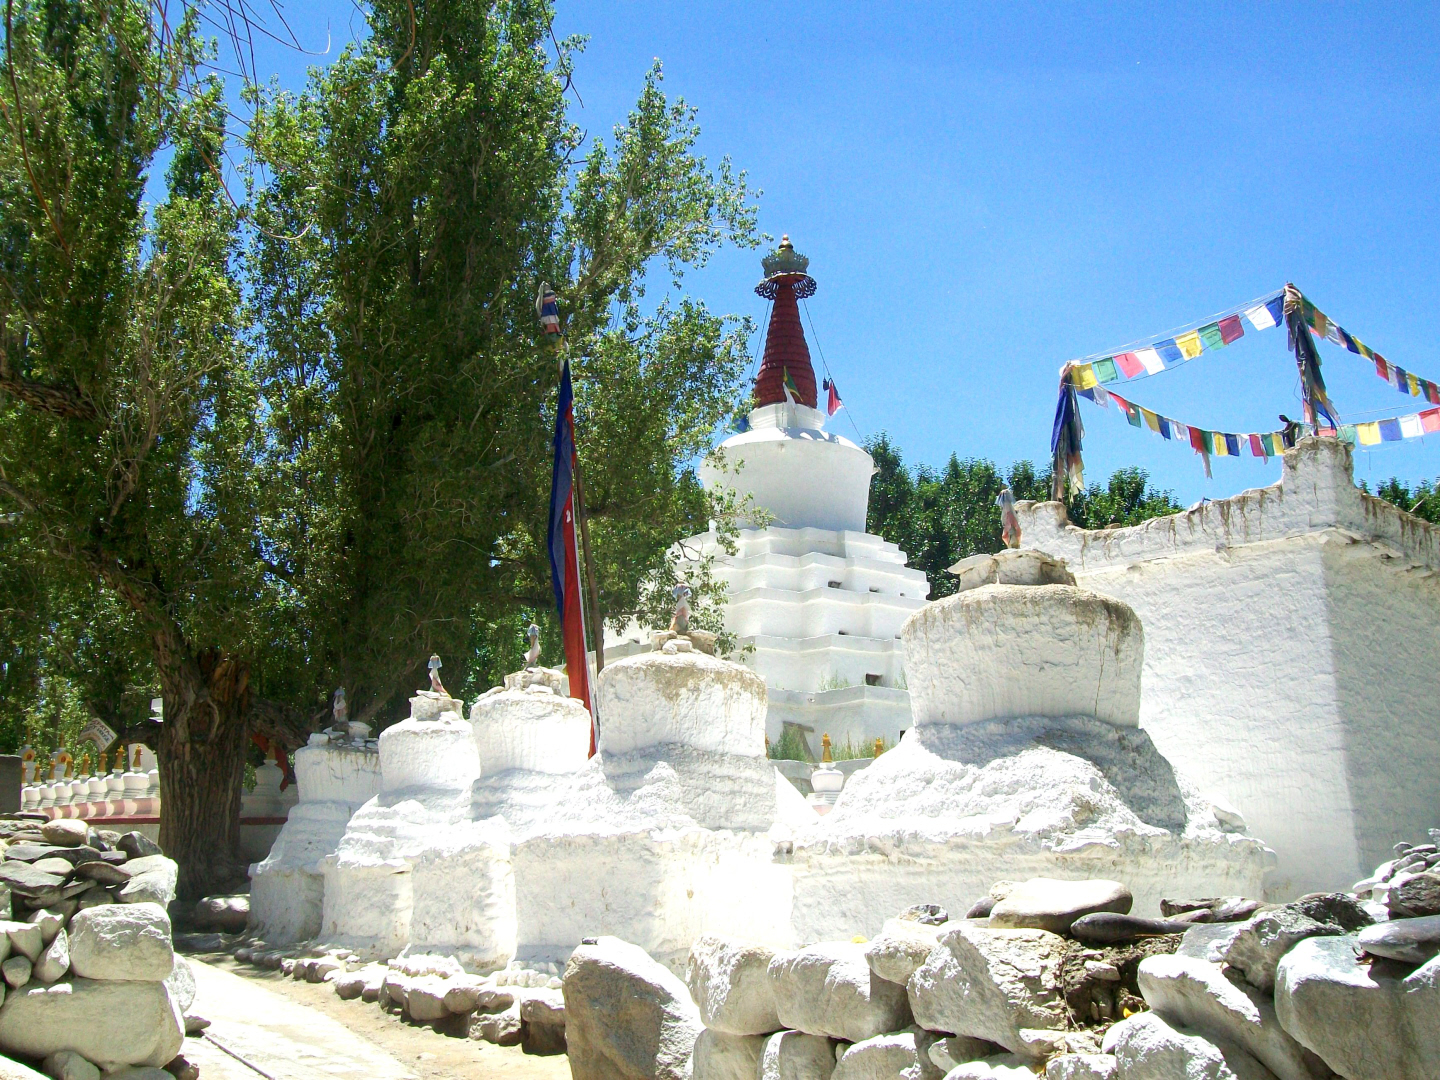 Gaadan Temple & Stupa - Leh, Ladakh - India